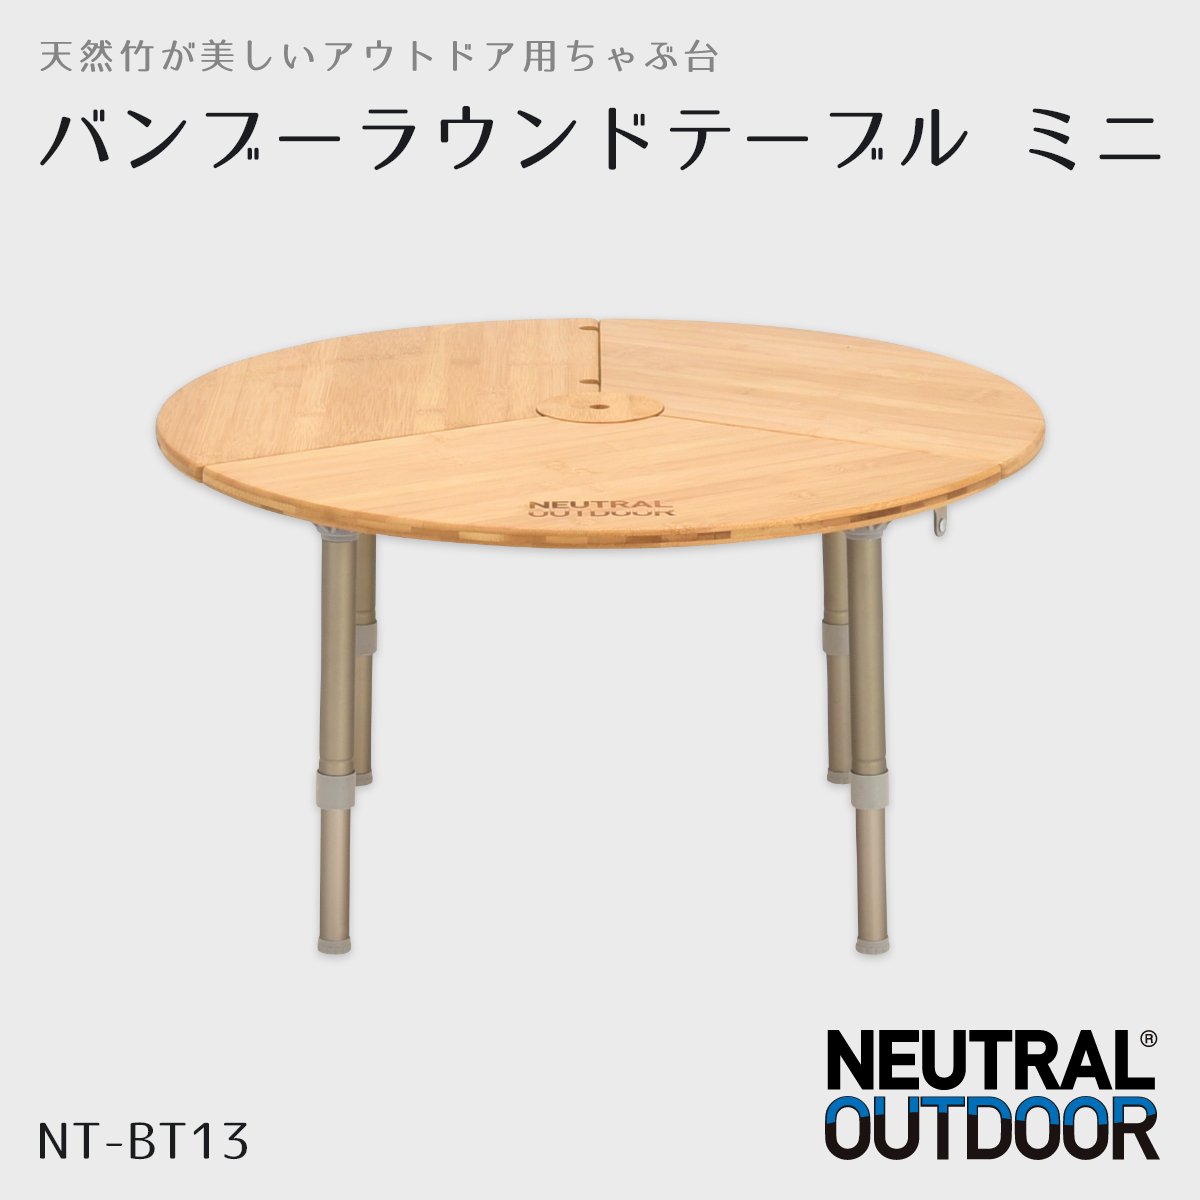 バンブーラウンドテーブル ミニ NT-BT13 – Neutral Outdoor 